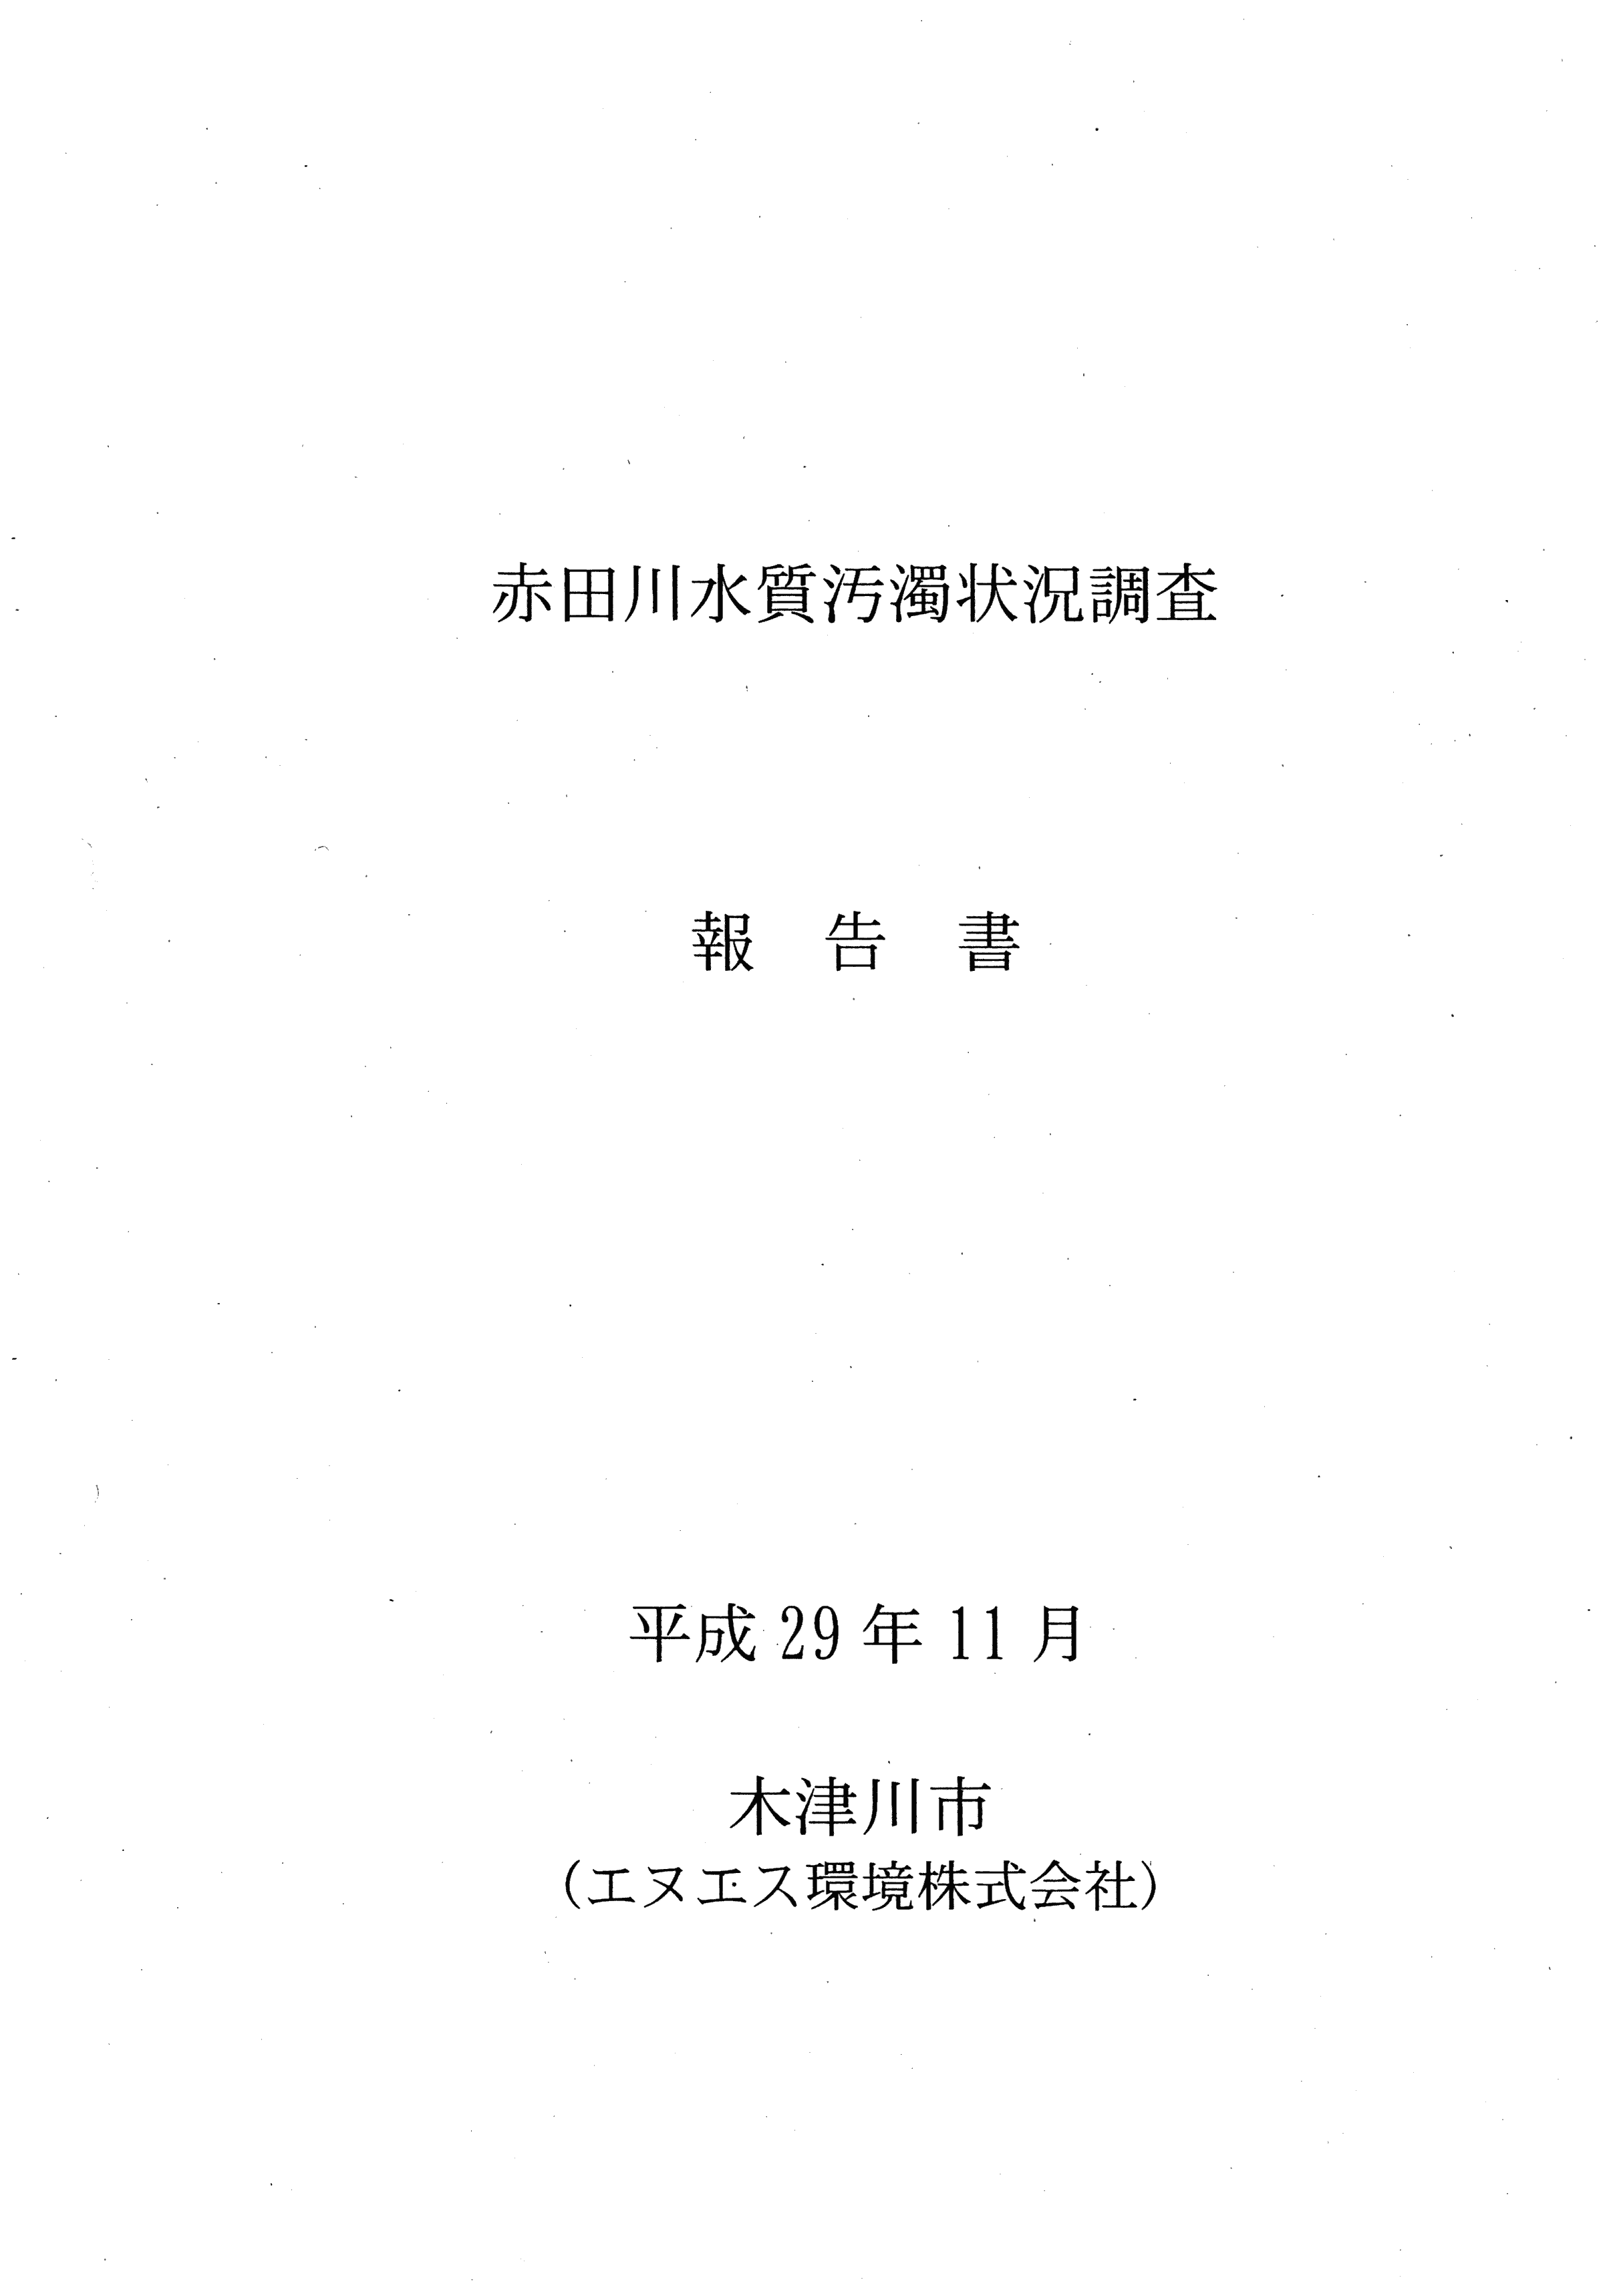 平成29年11月-赤田川水質汚濁状況調査報告書-01